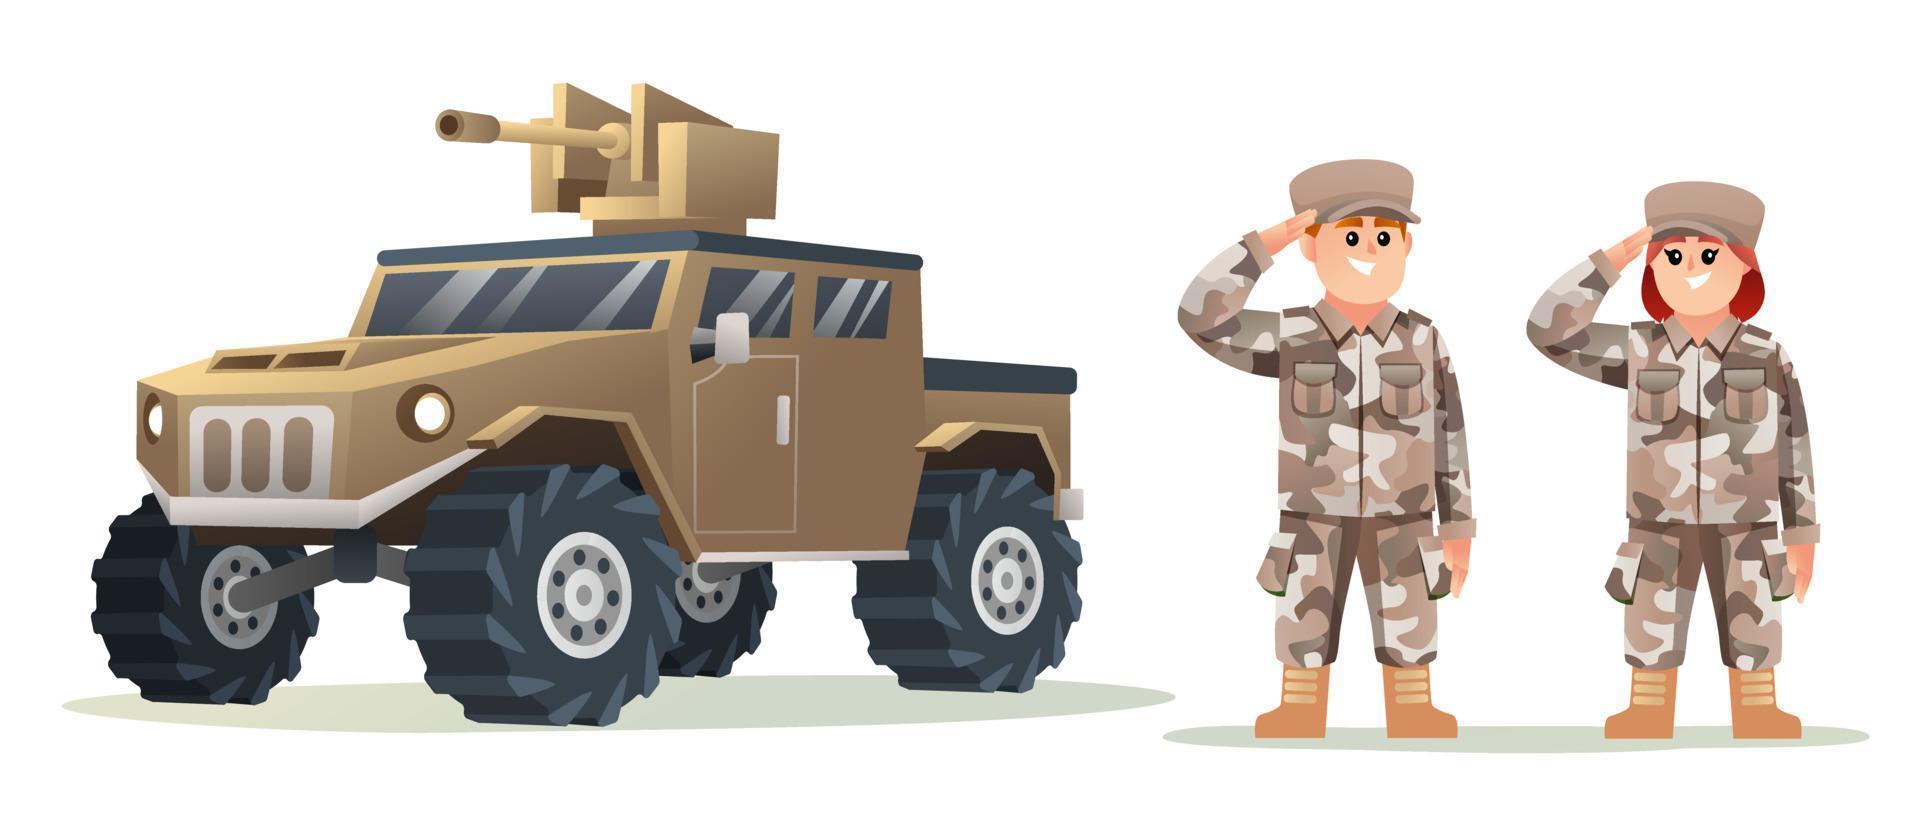 niedliche soldatenfiguren des kleinen jungen und des mädchens mit karikaturillustration des militärfahrzeugs vektor